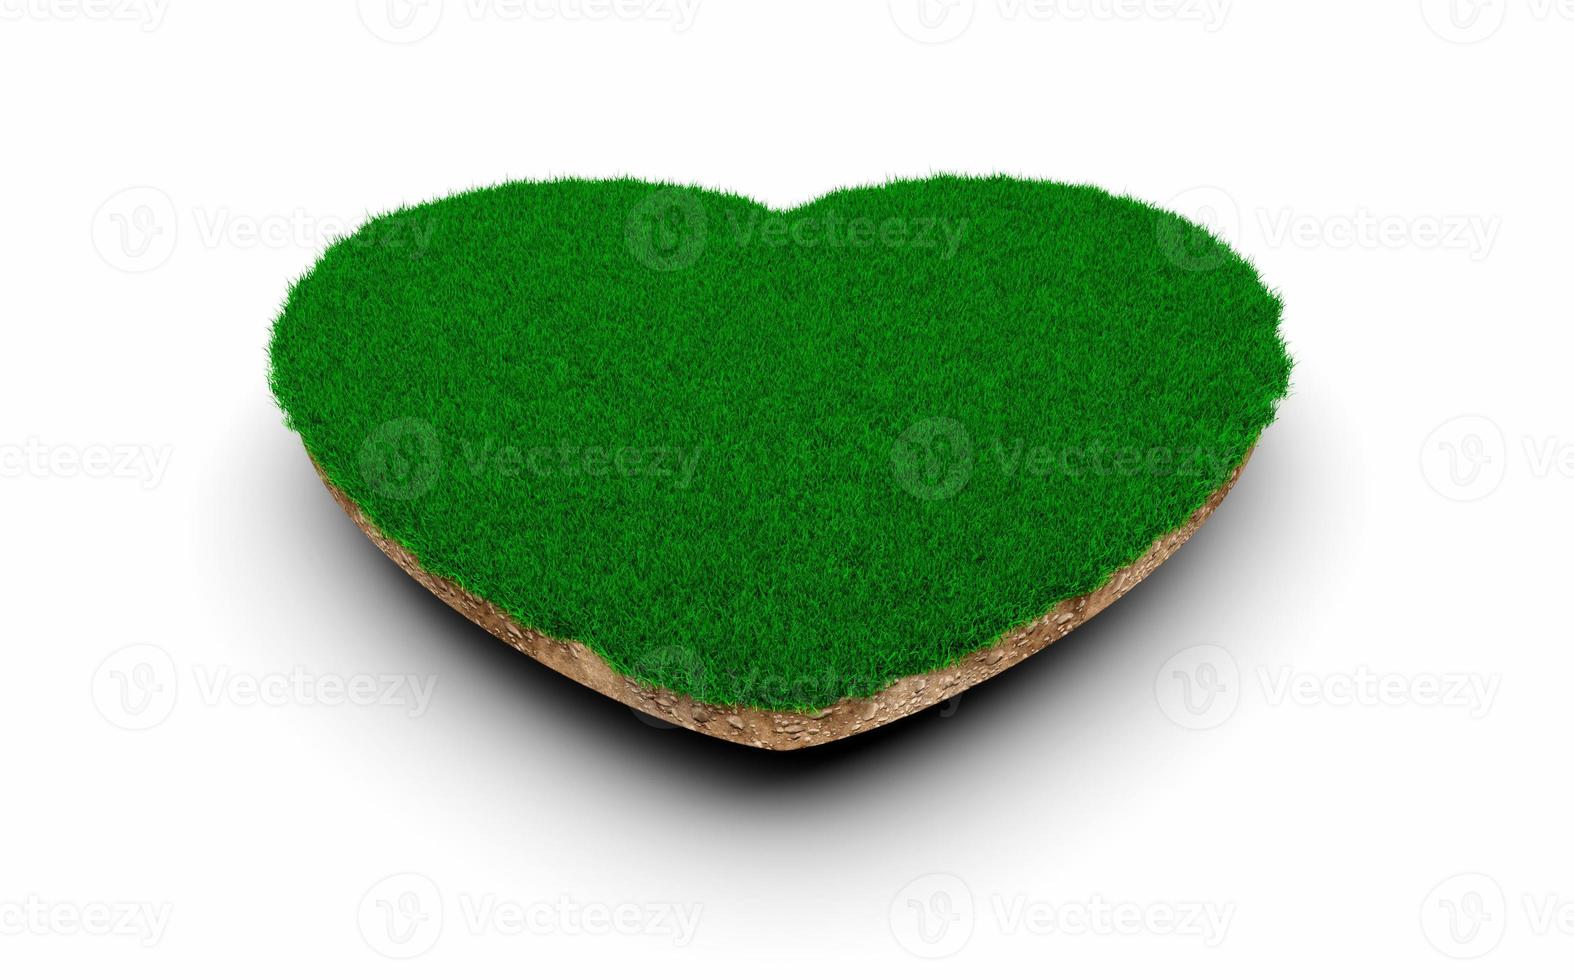 coupe transversale de la géologie du sol en forme de coeur avec de l'herbe verte, de la boue de la terre coupée illustration 3d isolée photo